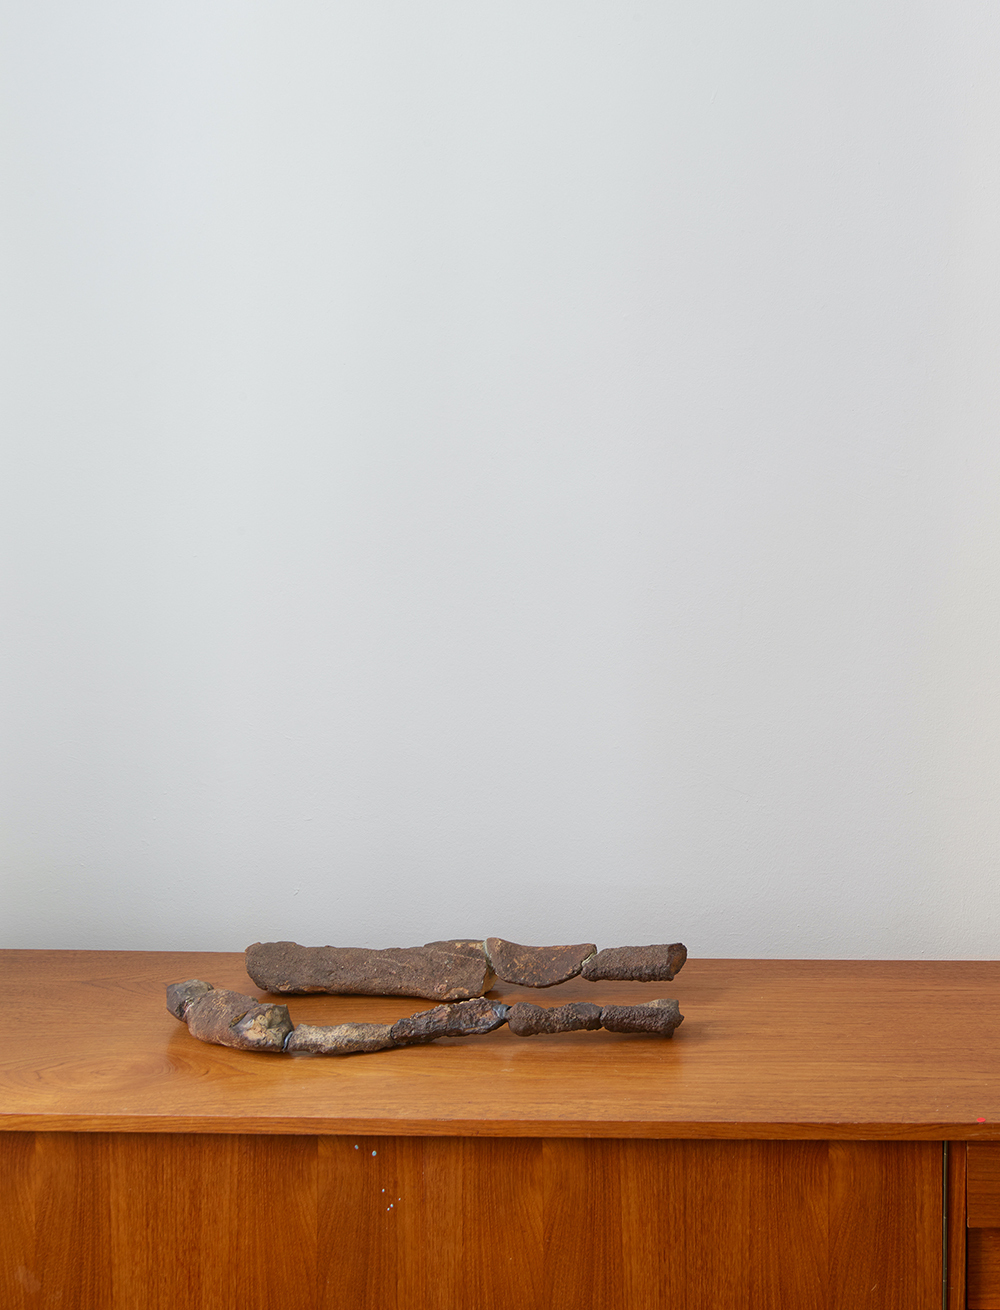 Tarik Kentouche, Neu, 2021, stones, epoxy, ca. 60cm